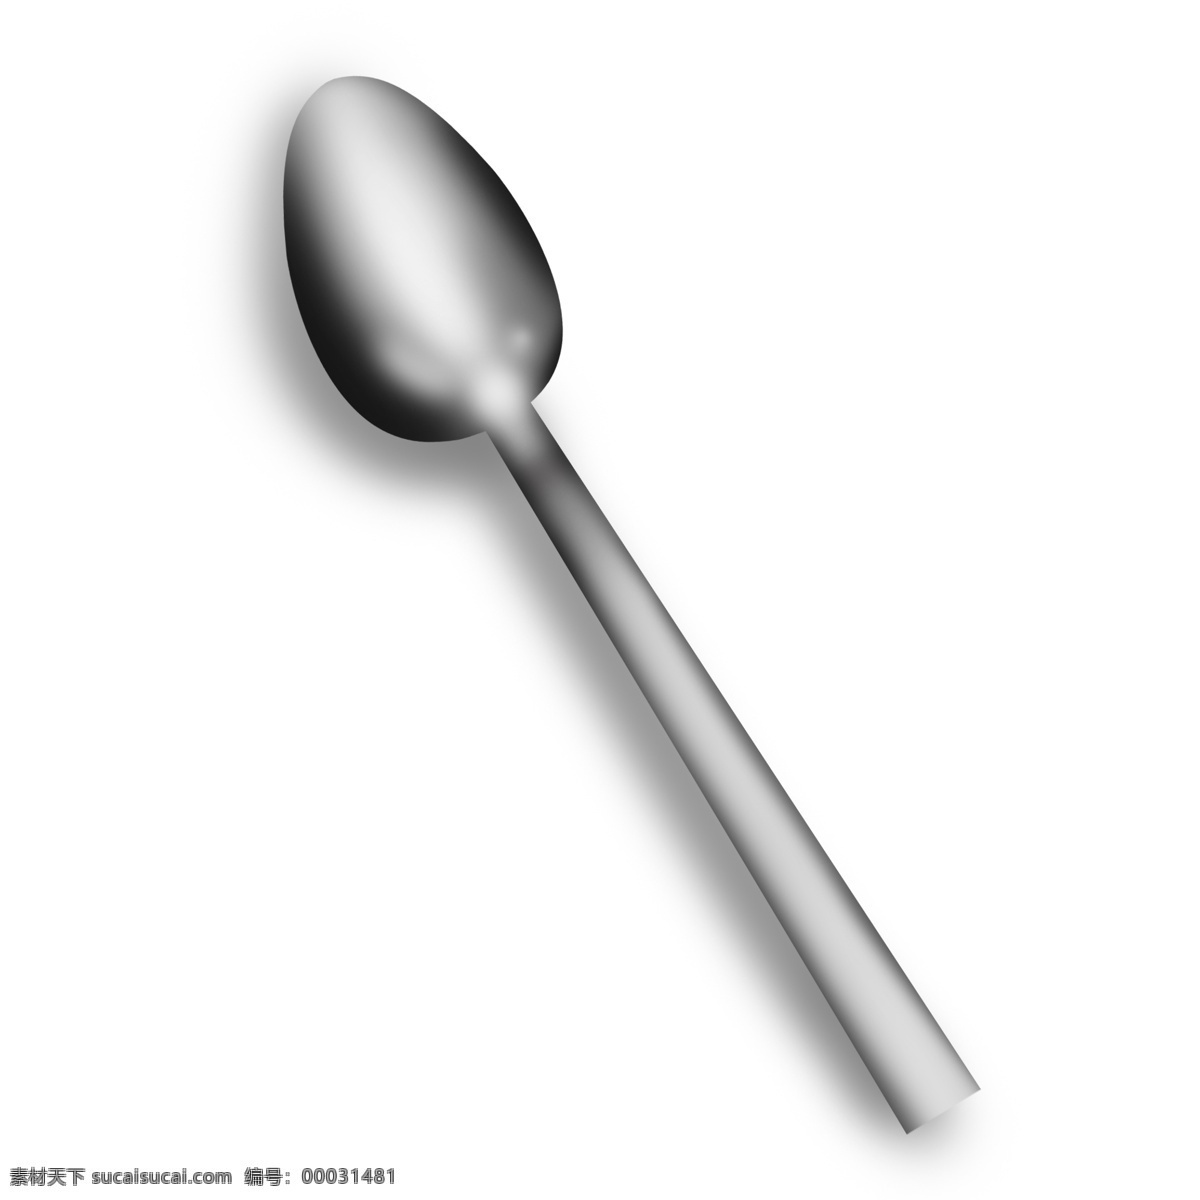 灰白色 椭圆形 水滴 状 勺子 银灰色 水滴形 可爱 精致 反光 立体质感 金属 曲线 工艺 工具 仿真